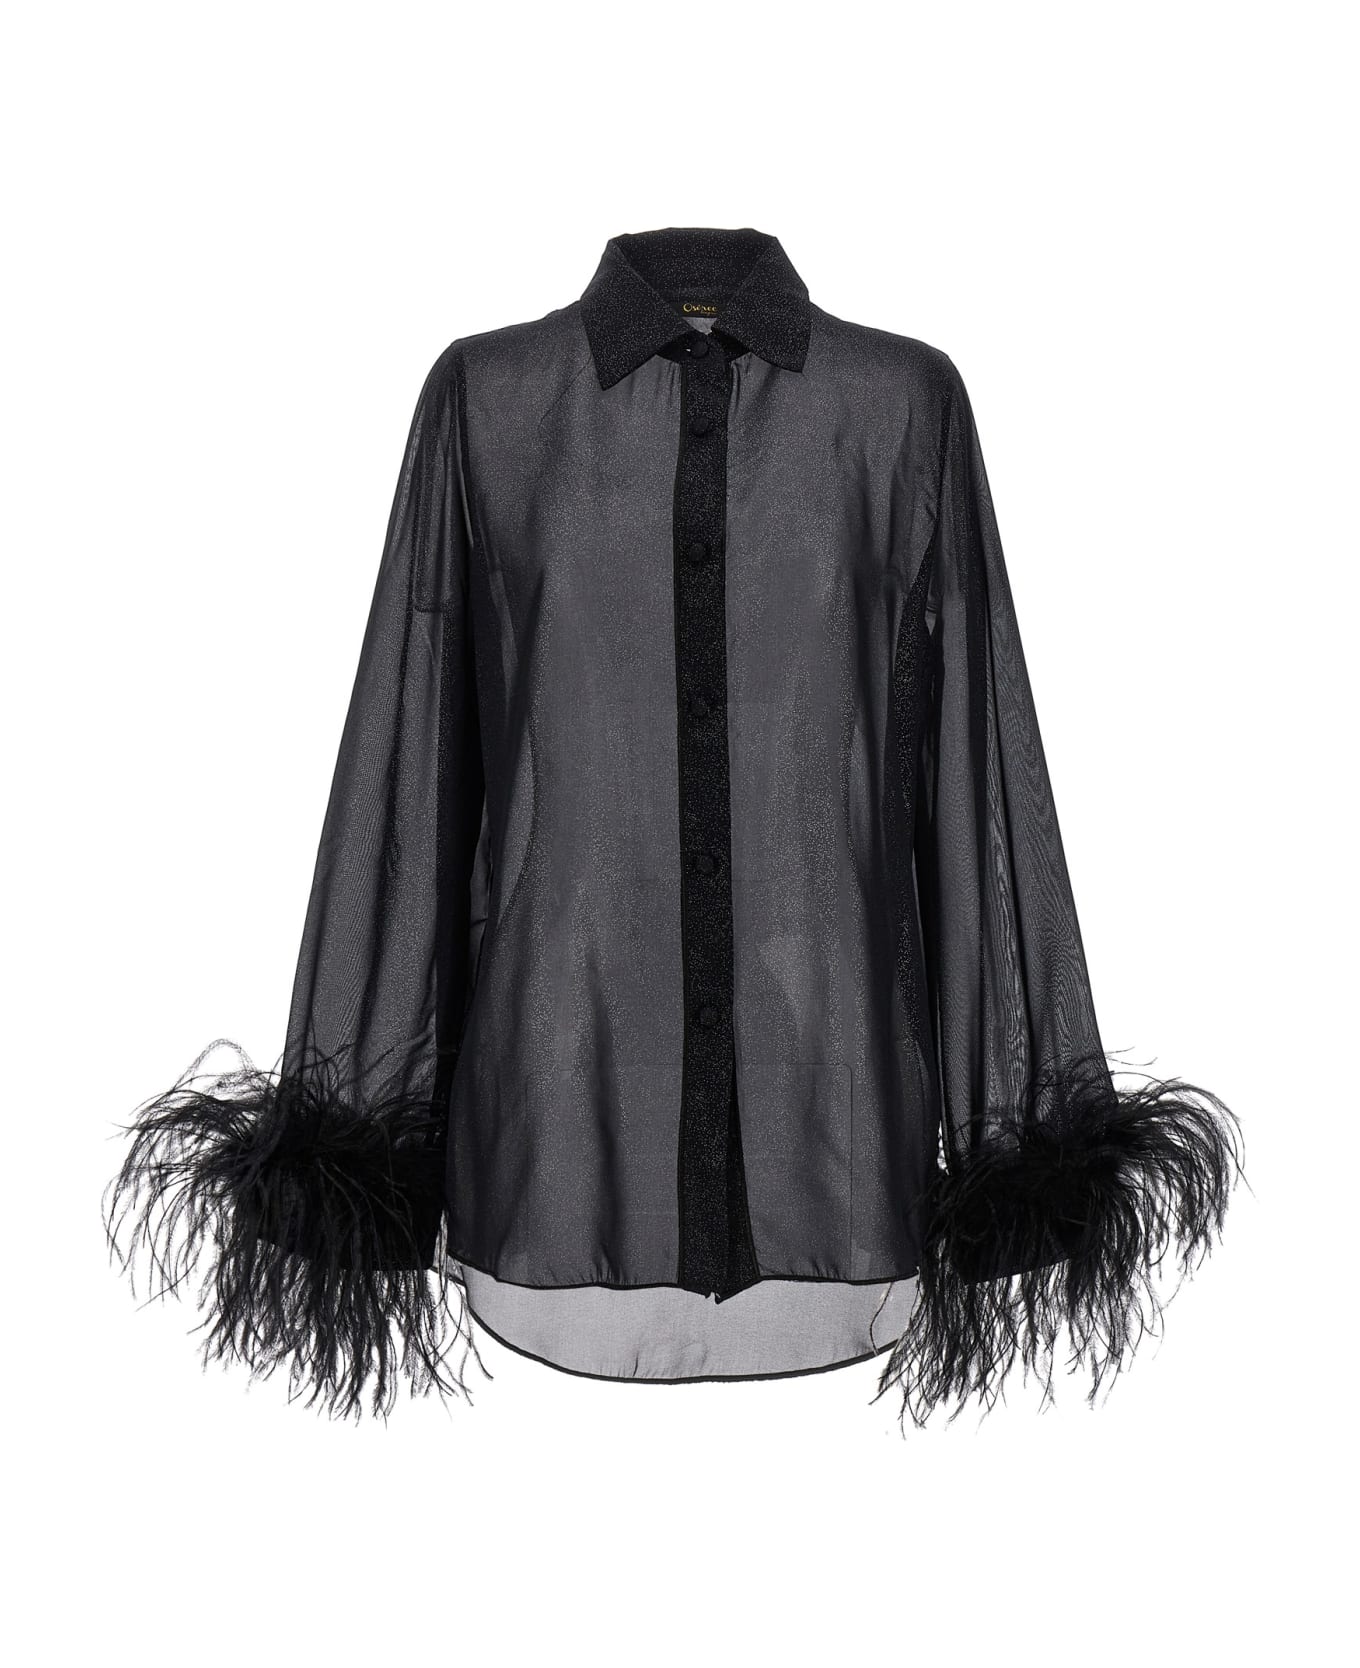 Oseree 'plumage' Shirt - Black   ブラウス